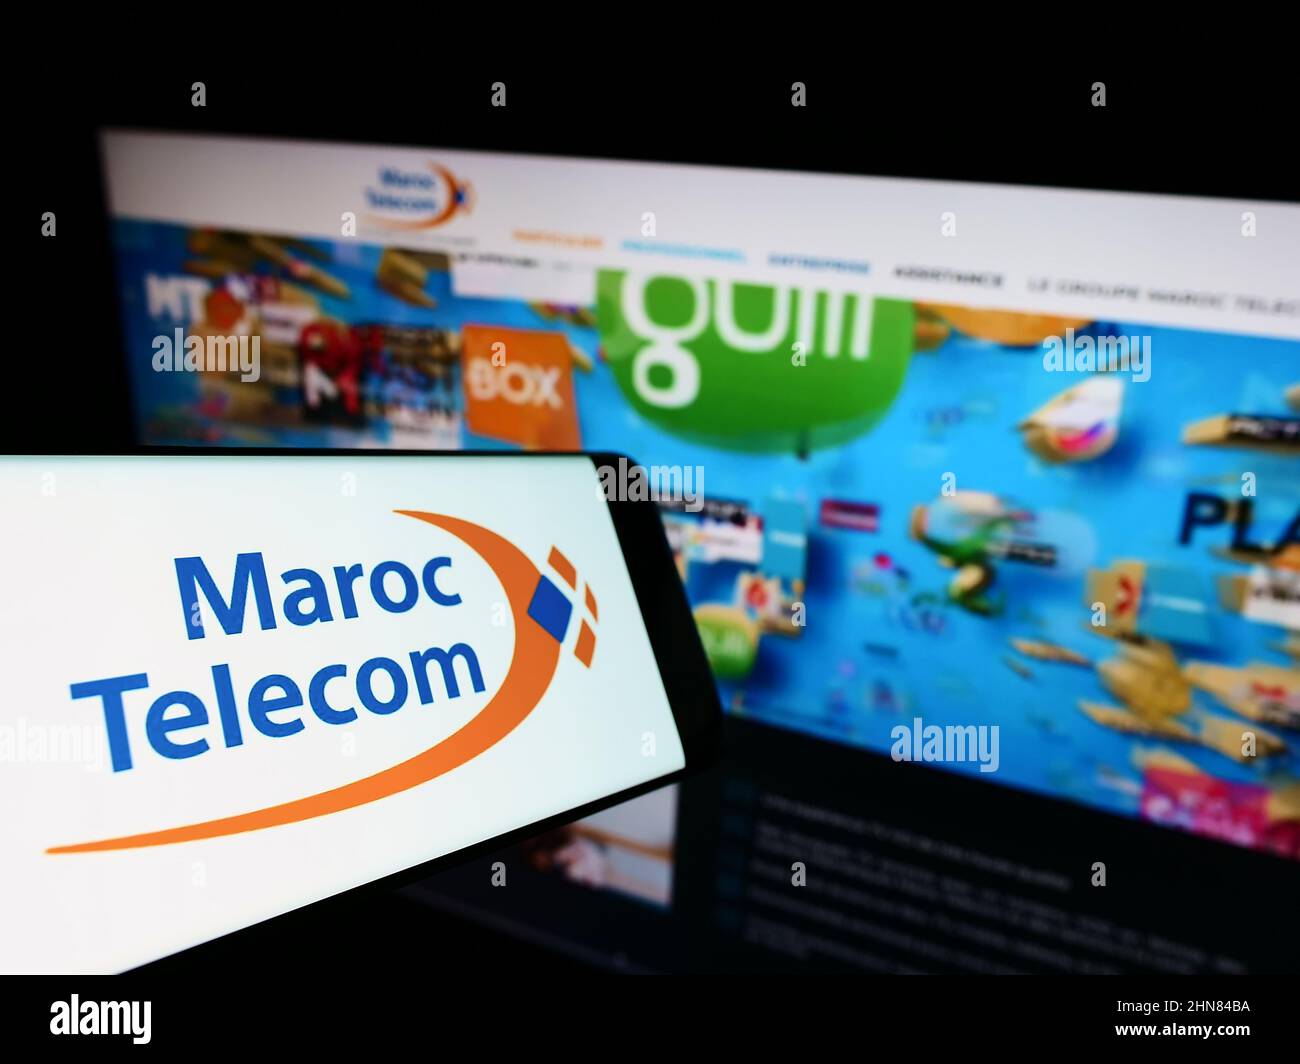 Maroc telecom immagini e fotografie stock ad alta risoluzione - Alamy